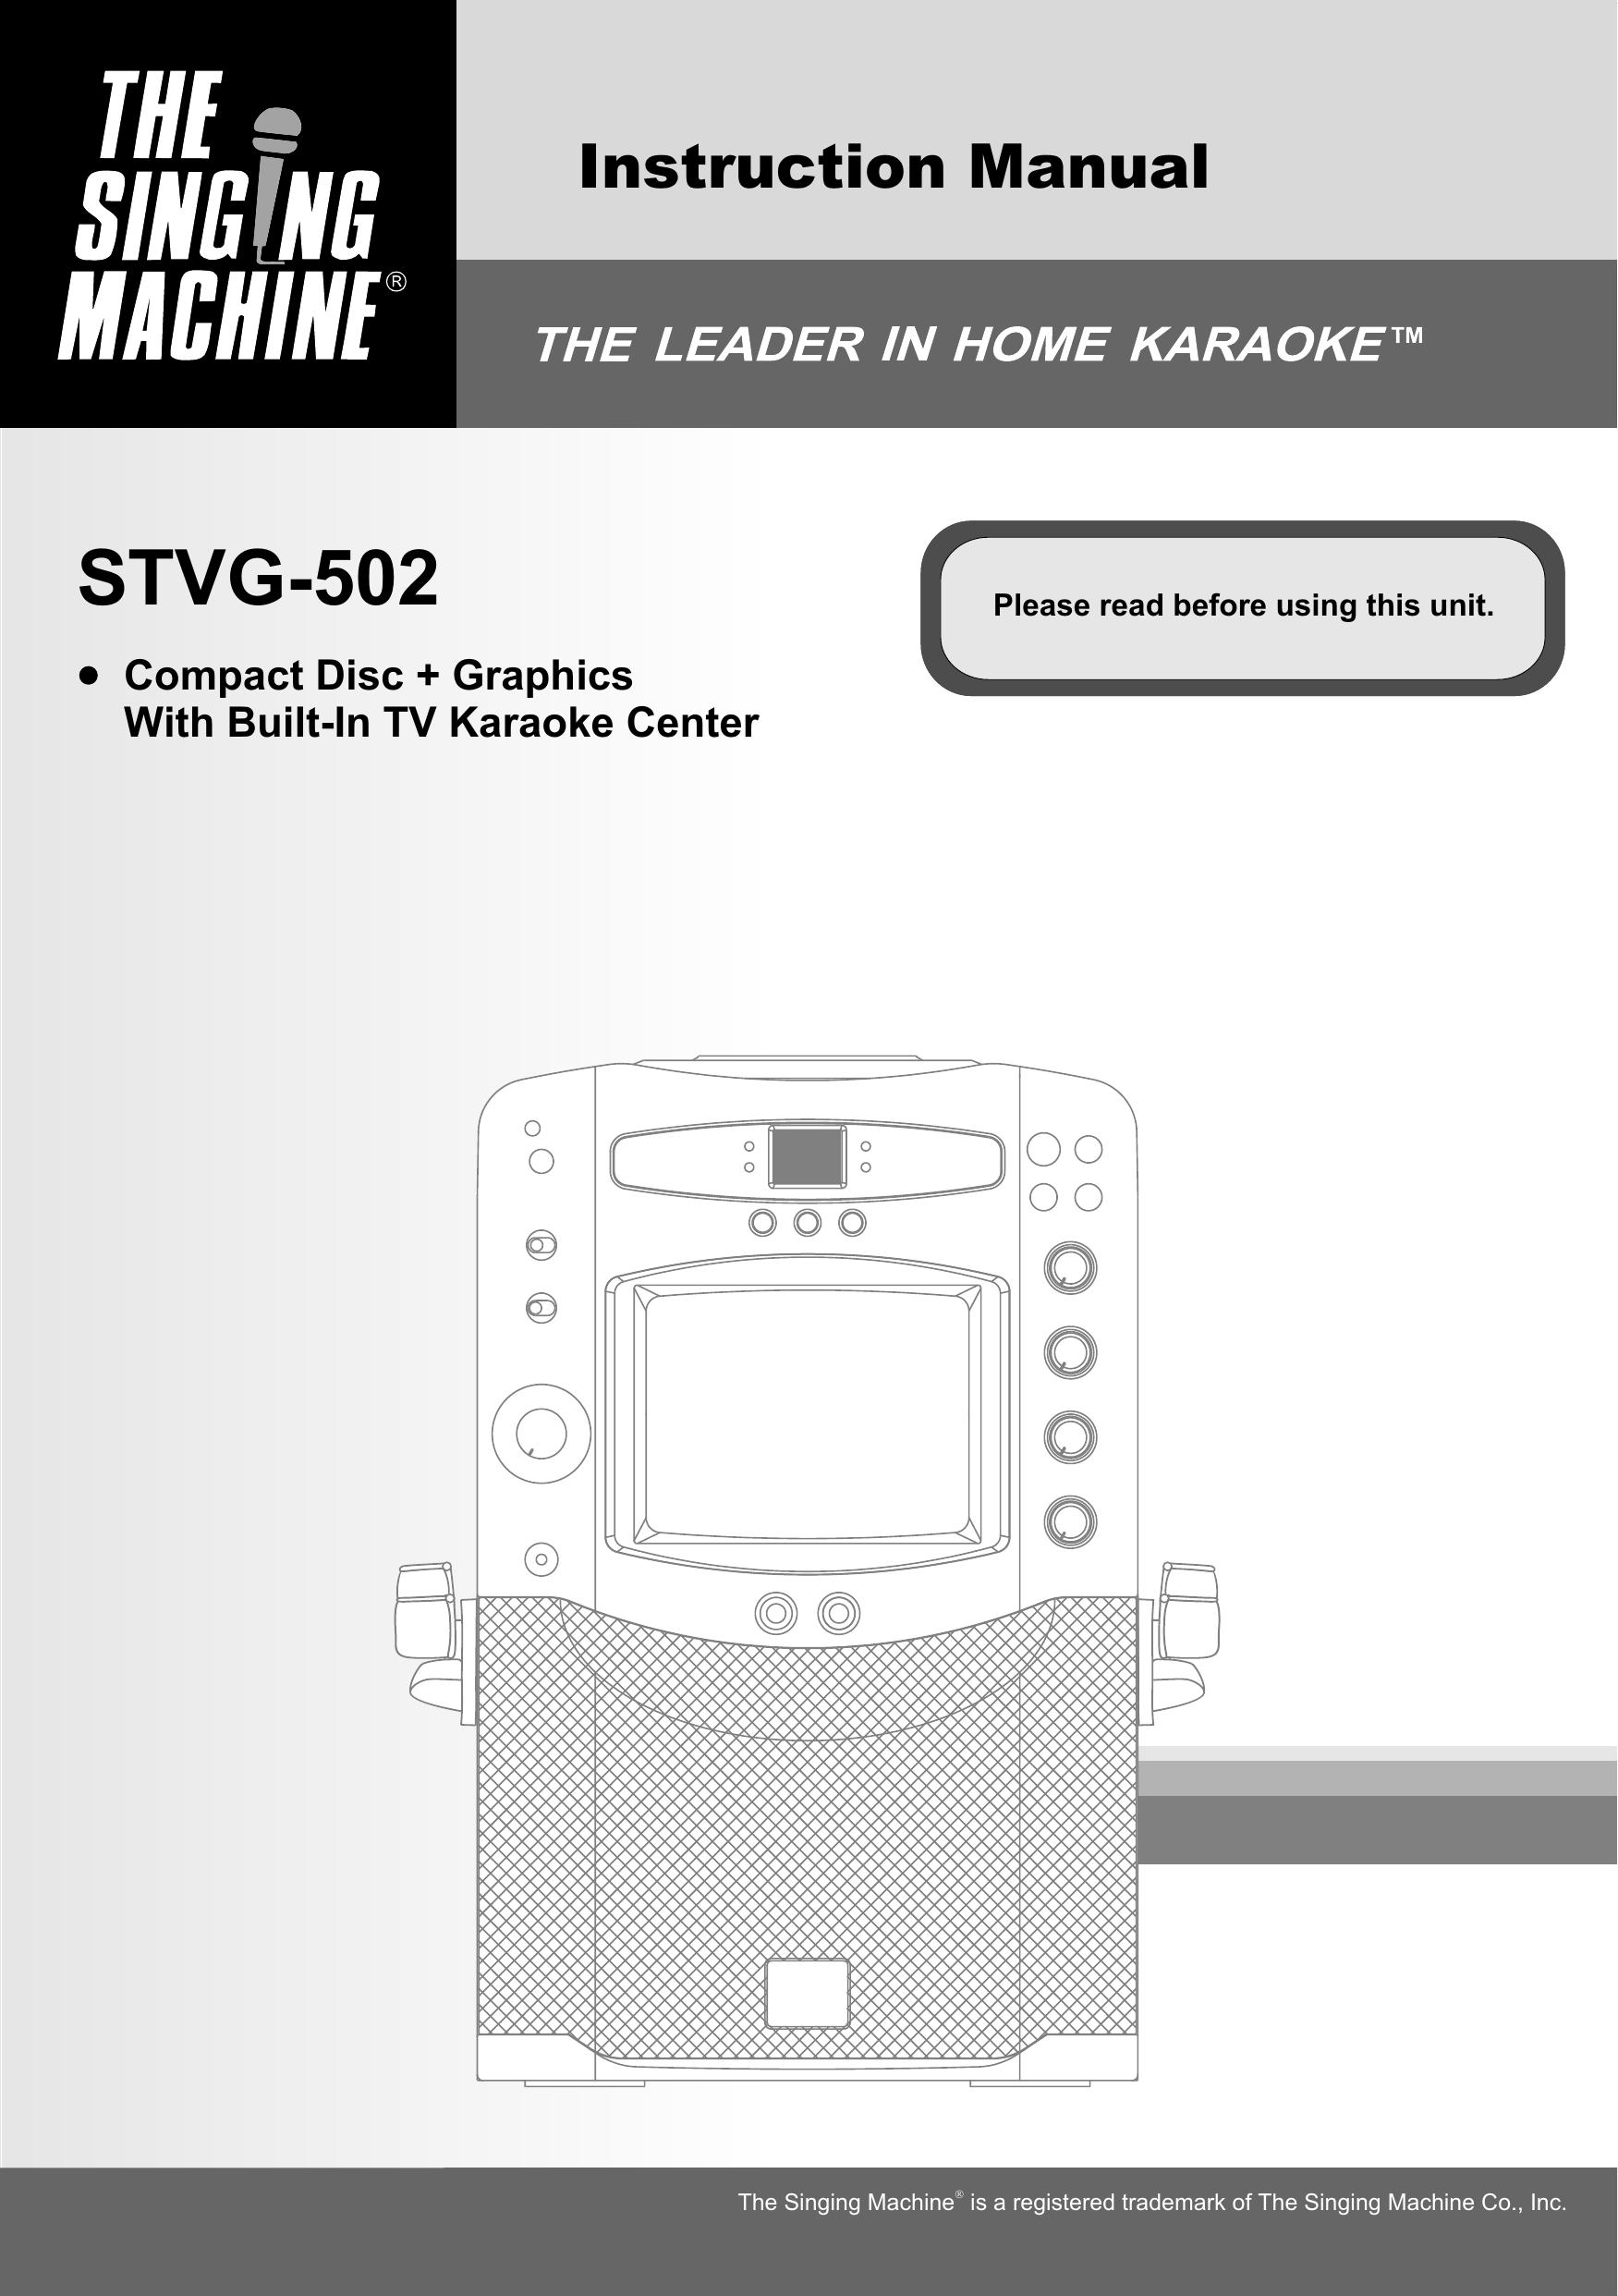 The Singing Machine STVG-502 Karaoke Machine User Manual